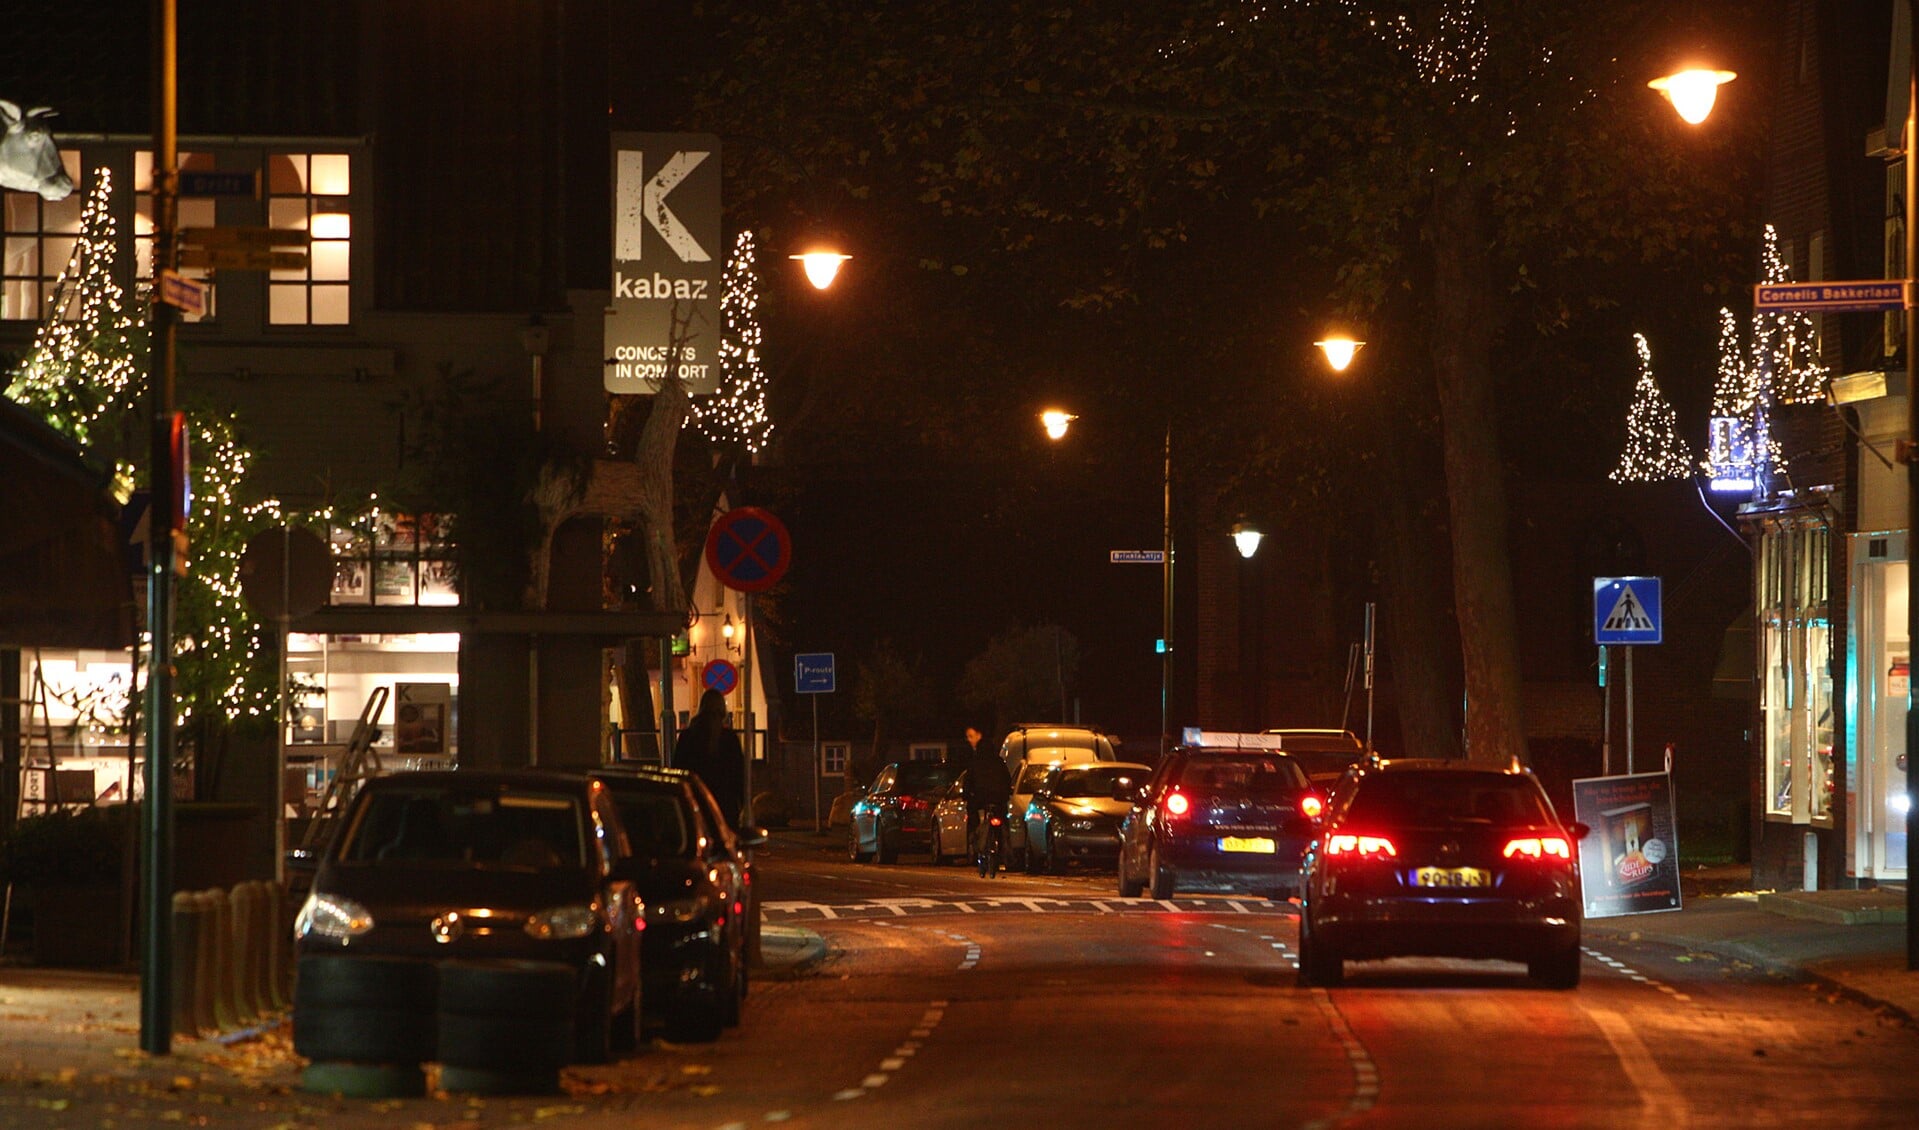 De Naarderstraat is wel sfeervol verlicht.